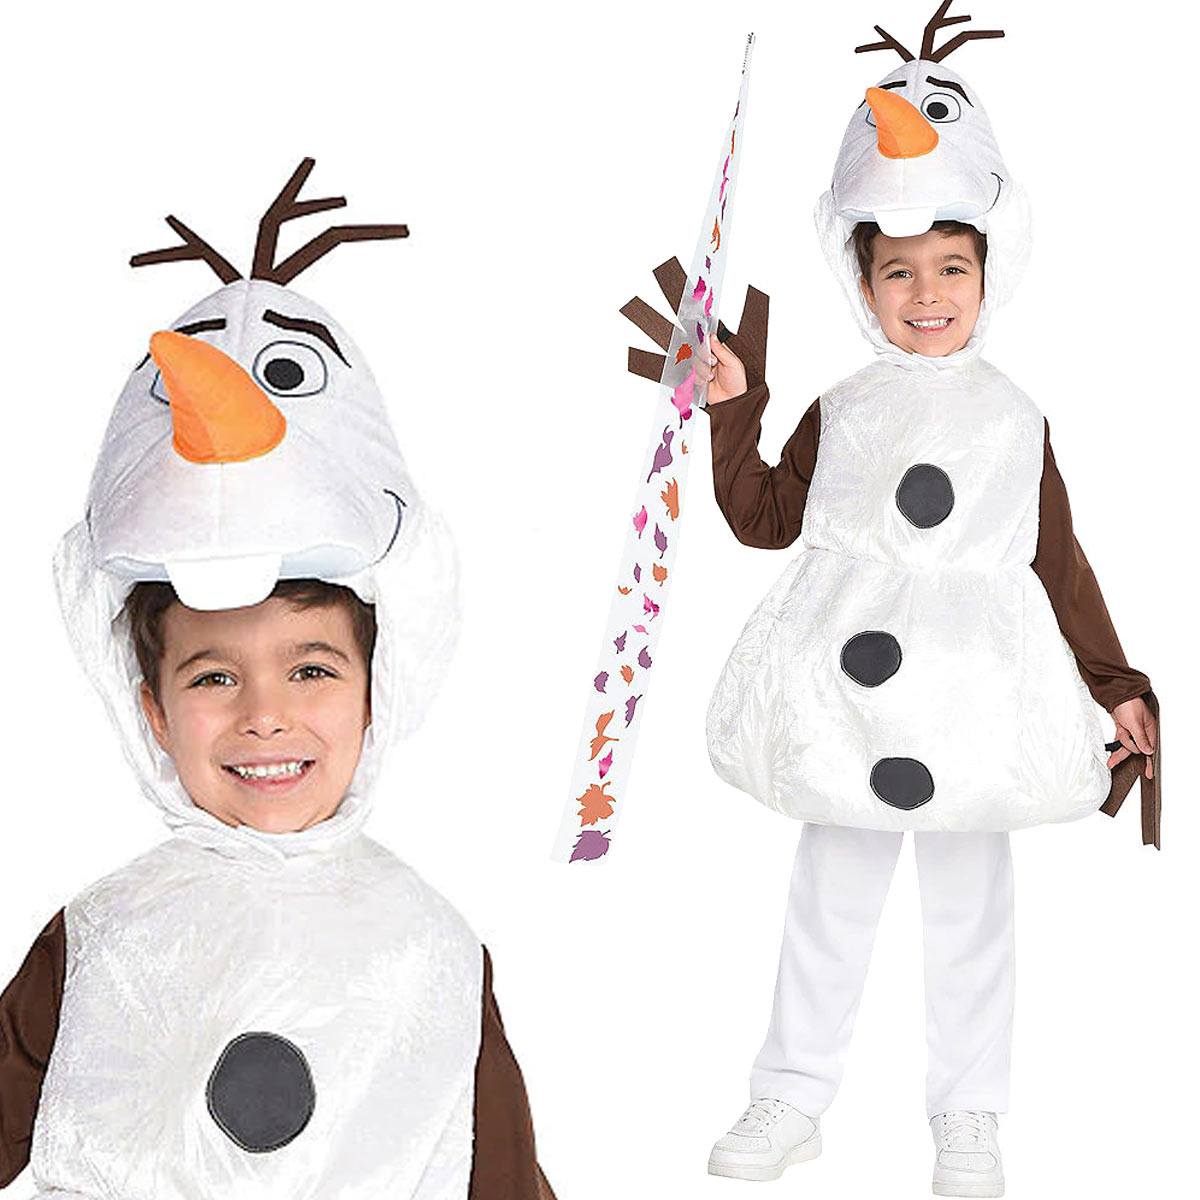 送料無料 アナと雪の女王 2 子供 オラフ なりきり アナ雪 キッズ コスプレ 衣装 仮装 コスチューム Frozen 2